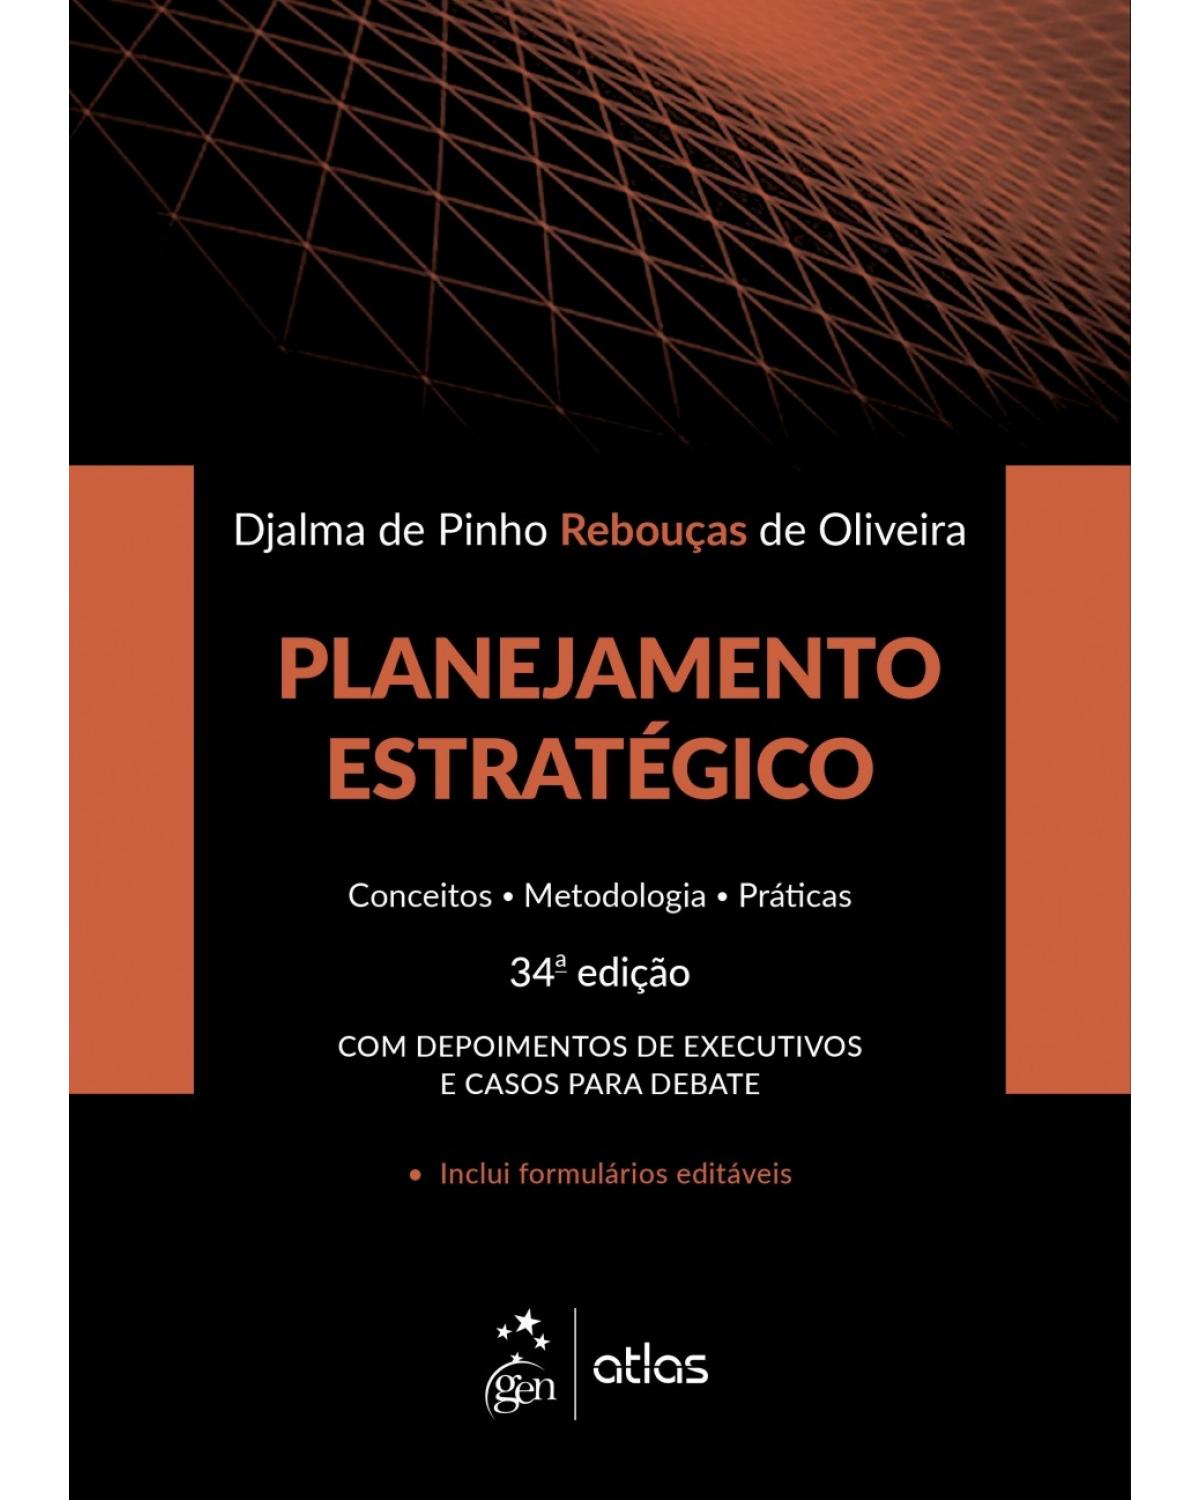 Planejamento estratégico - conceitos, metodologia, práticas - 34ª Edição | 2018